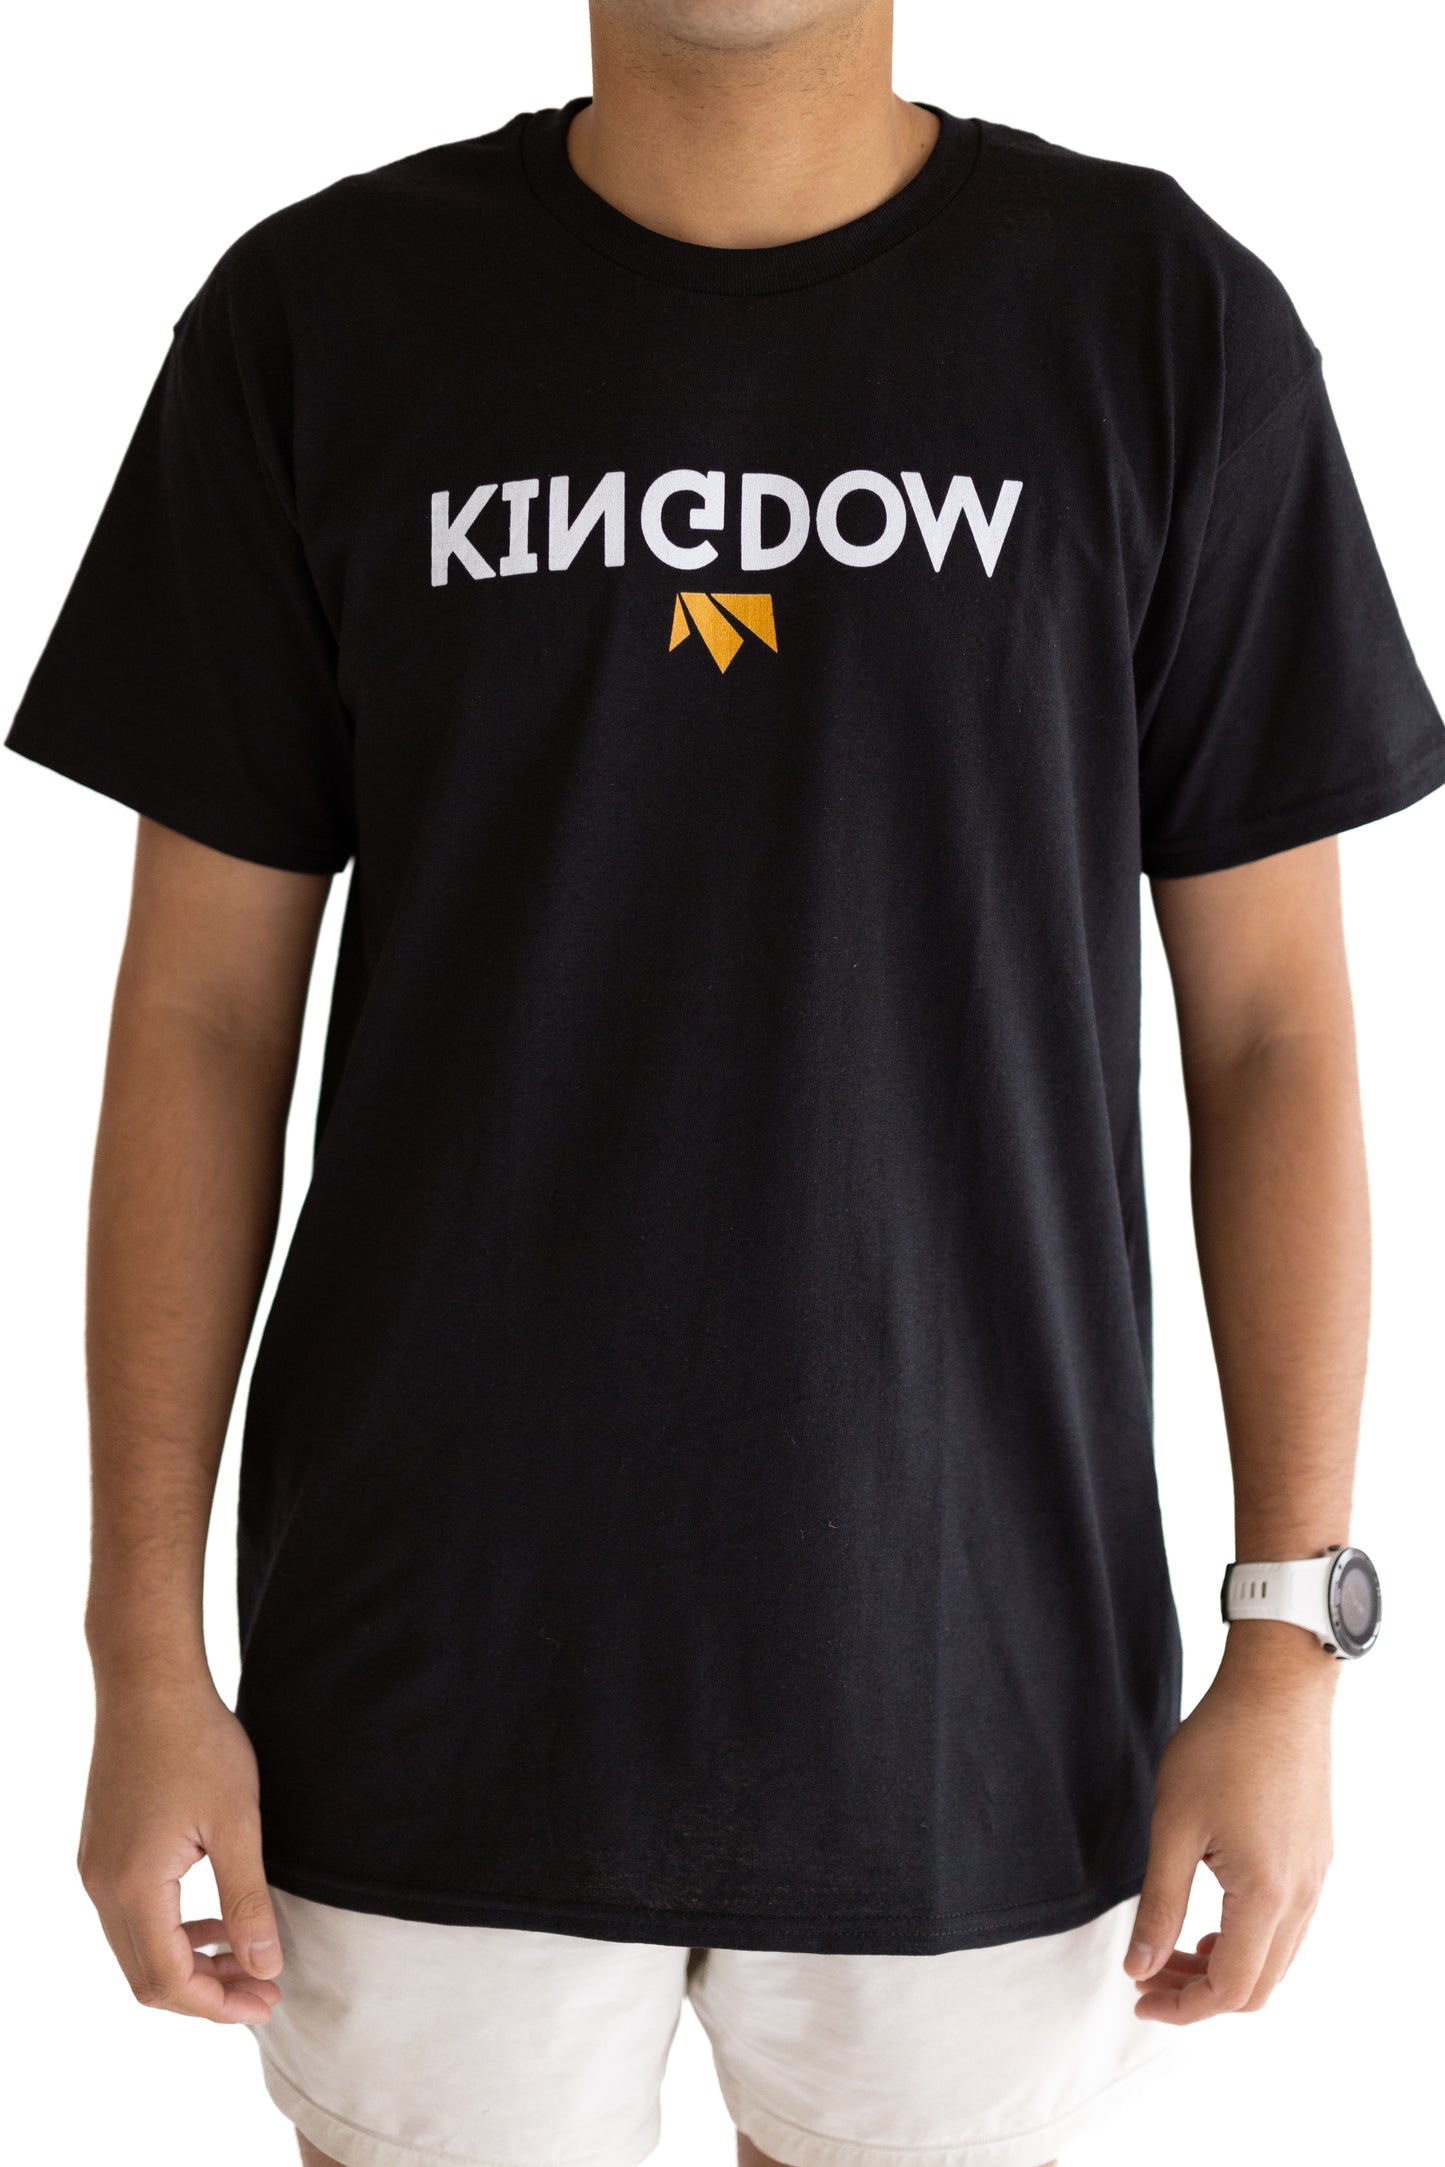 Upside-Down Kingdom Shirt